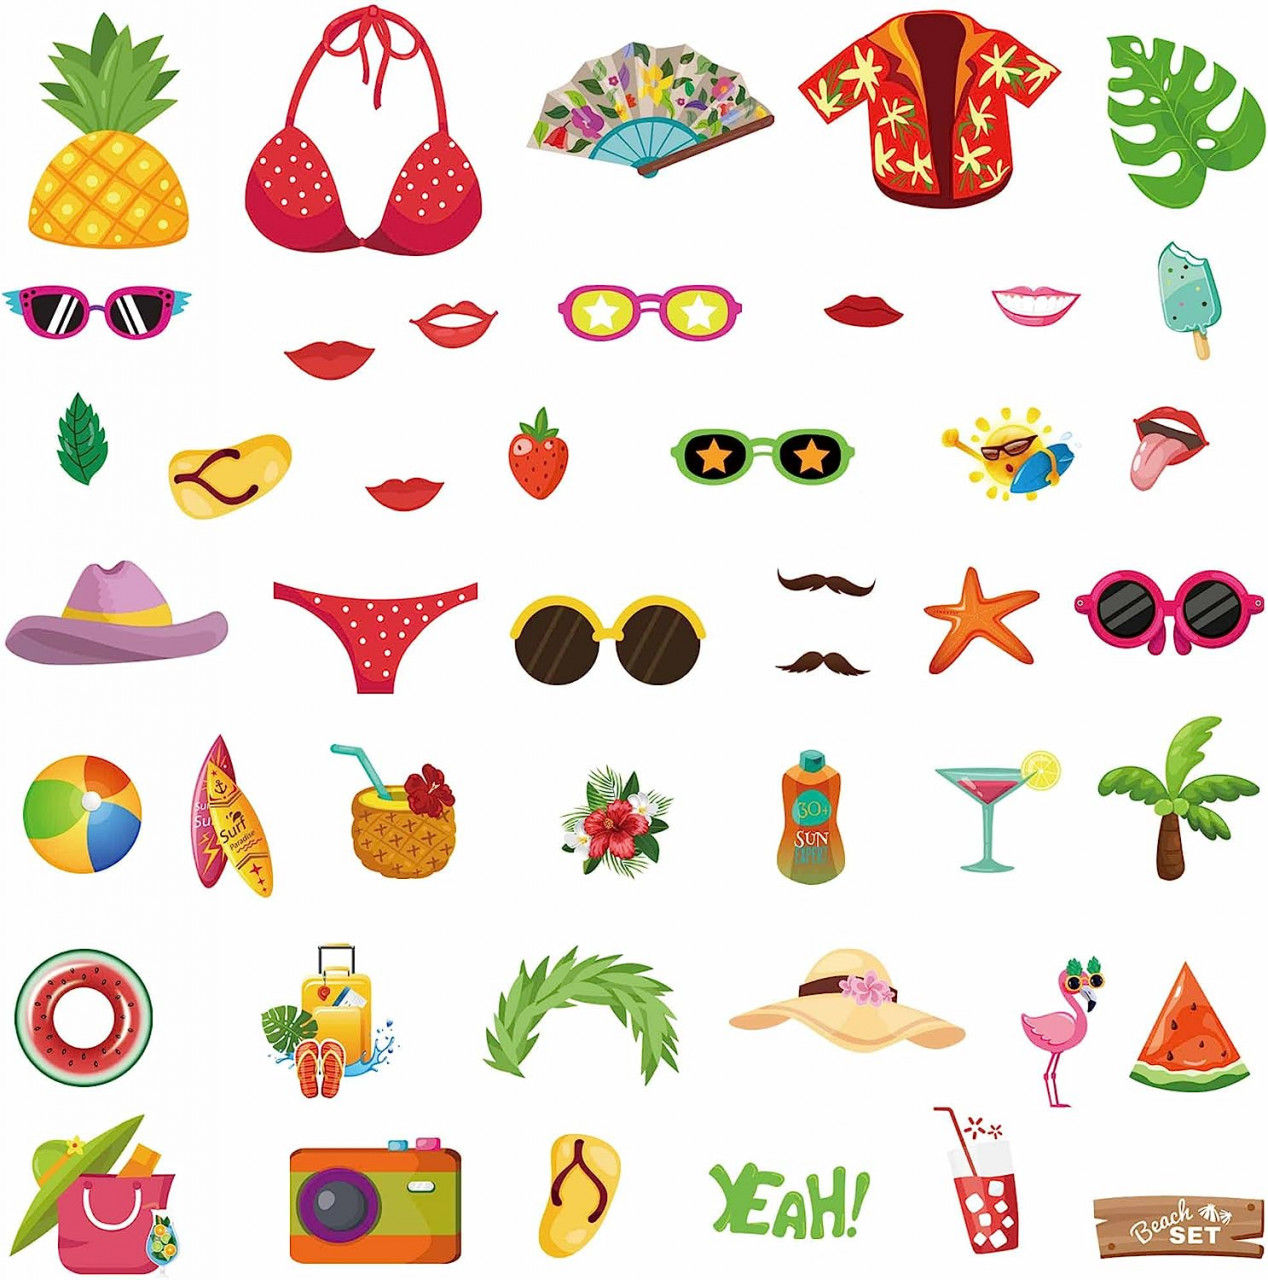 Set de 44 decoratiuni Hawaii pentru cabina foto Qpout, carton, multicolor accesorii